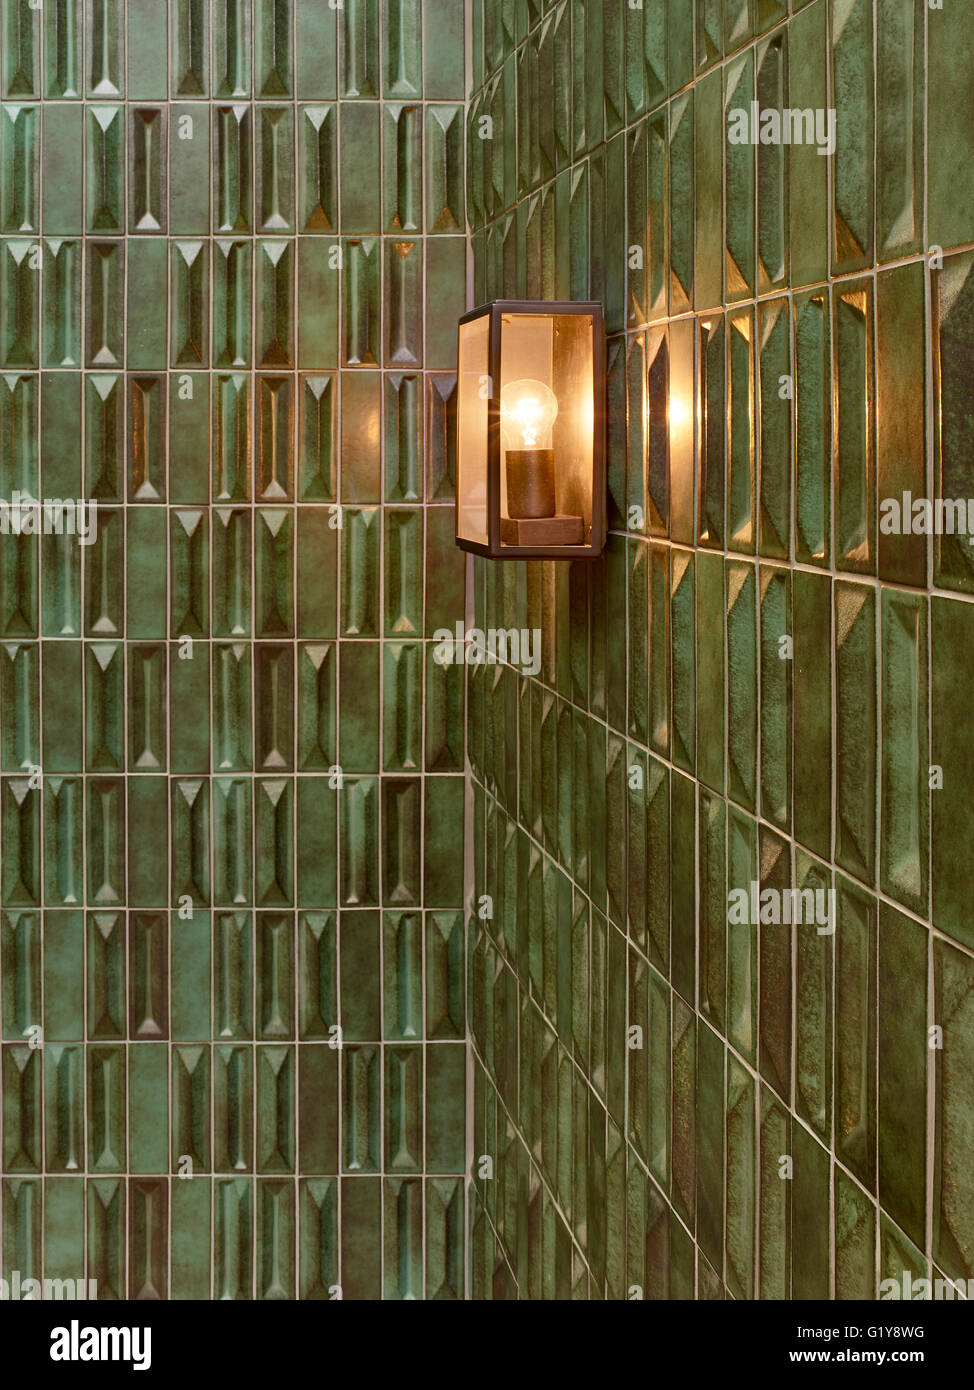 Chucs Westbourne Grove, geflieste Wand der Hofmauer Restaurant. Chucs Restaurant & Café Westbourne Grove, London, Vereinigtes Königreich. Architekt: Steif + Trevillion Architekten, 2016. Stockfoto